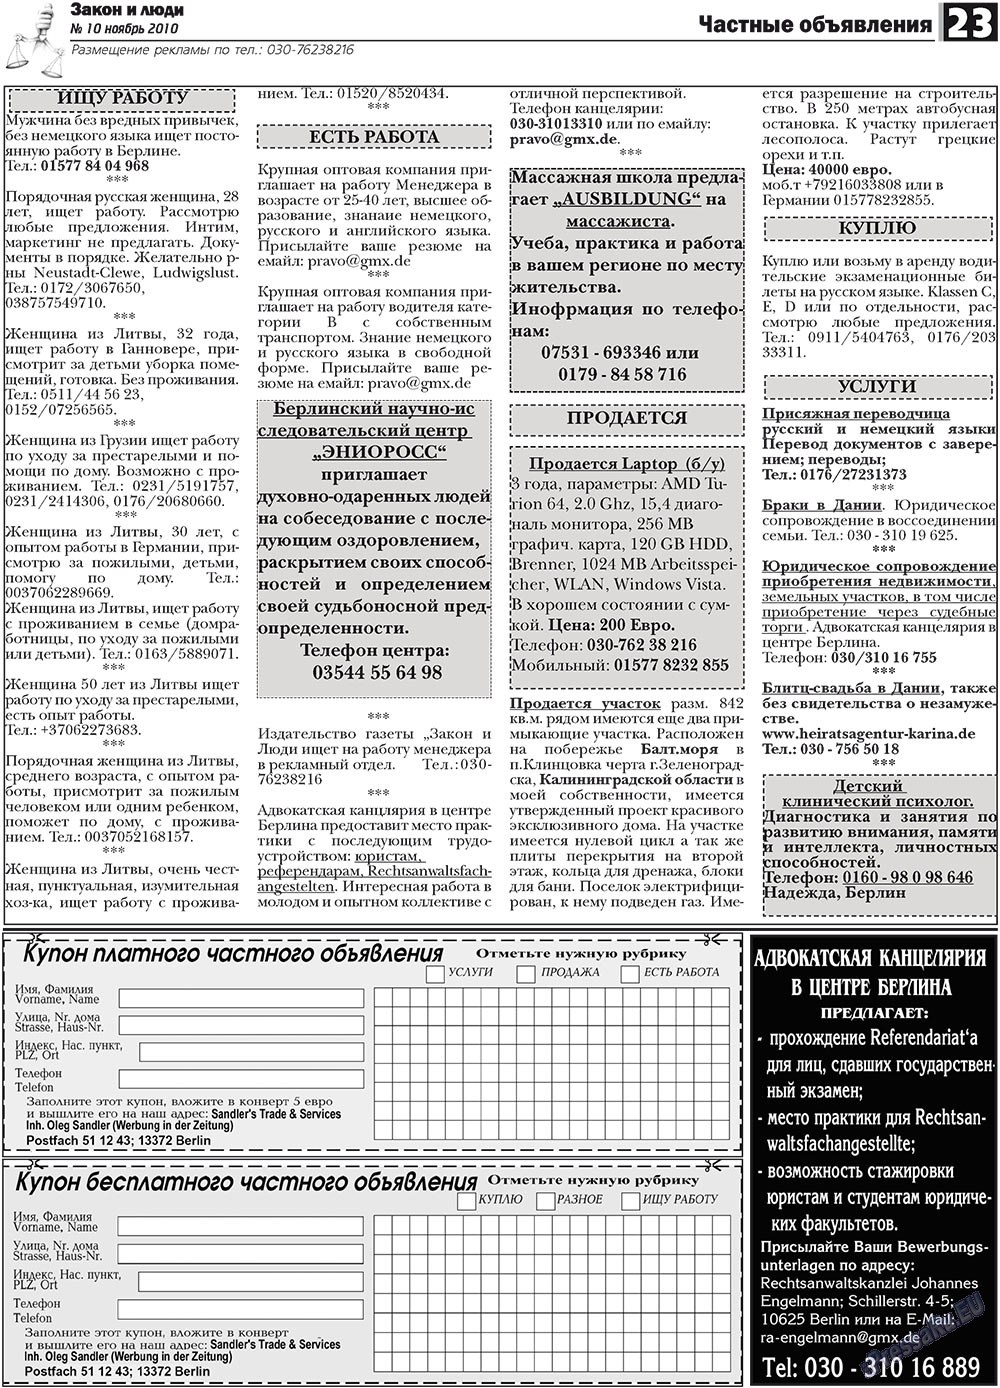 Закон и люди, газета. 2010 №10 стр.23